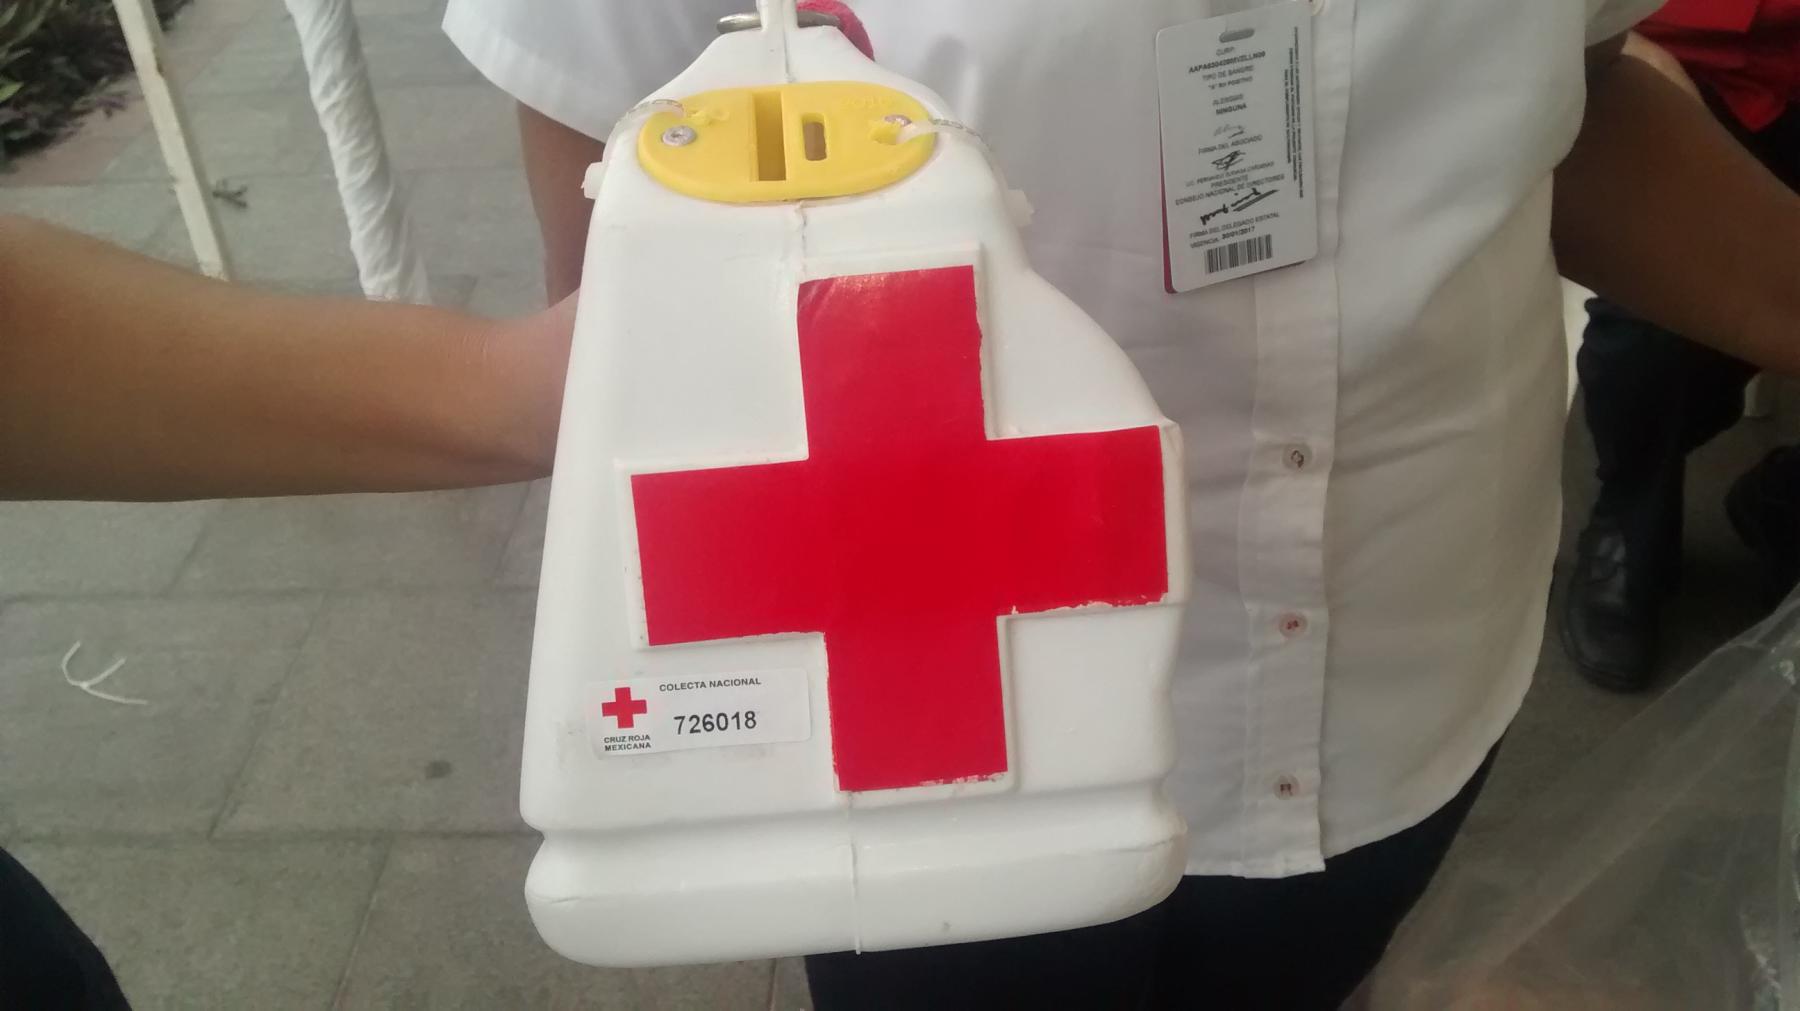  Alertan por fraude durante colecta de la Cruz Roja